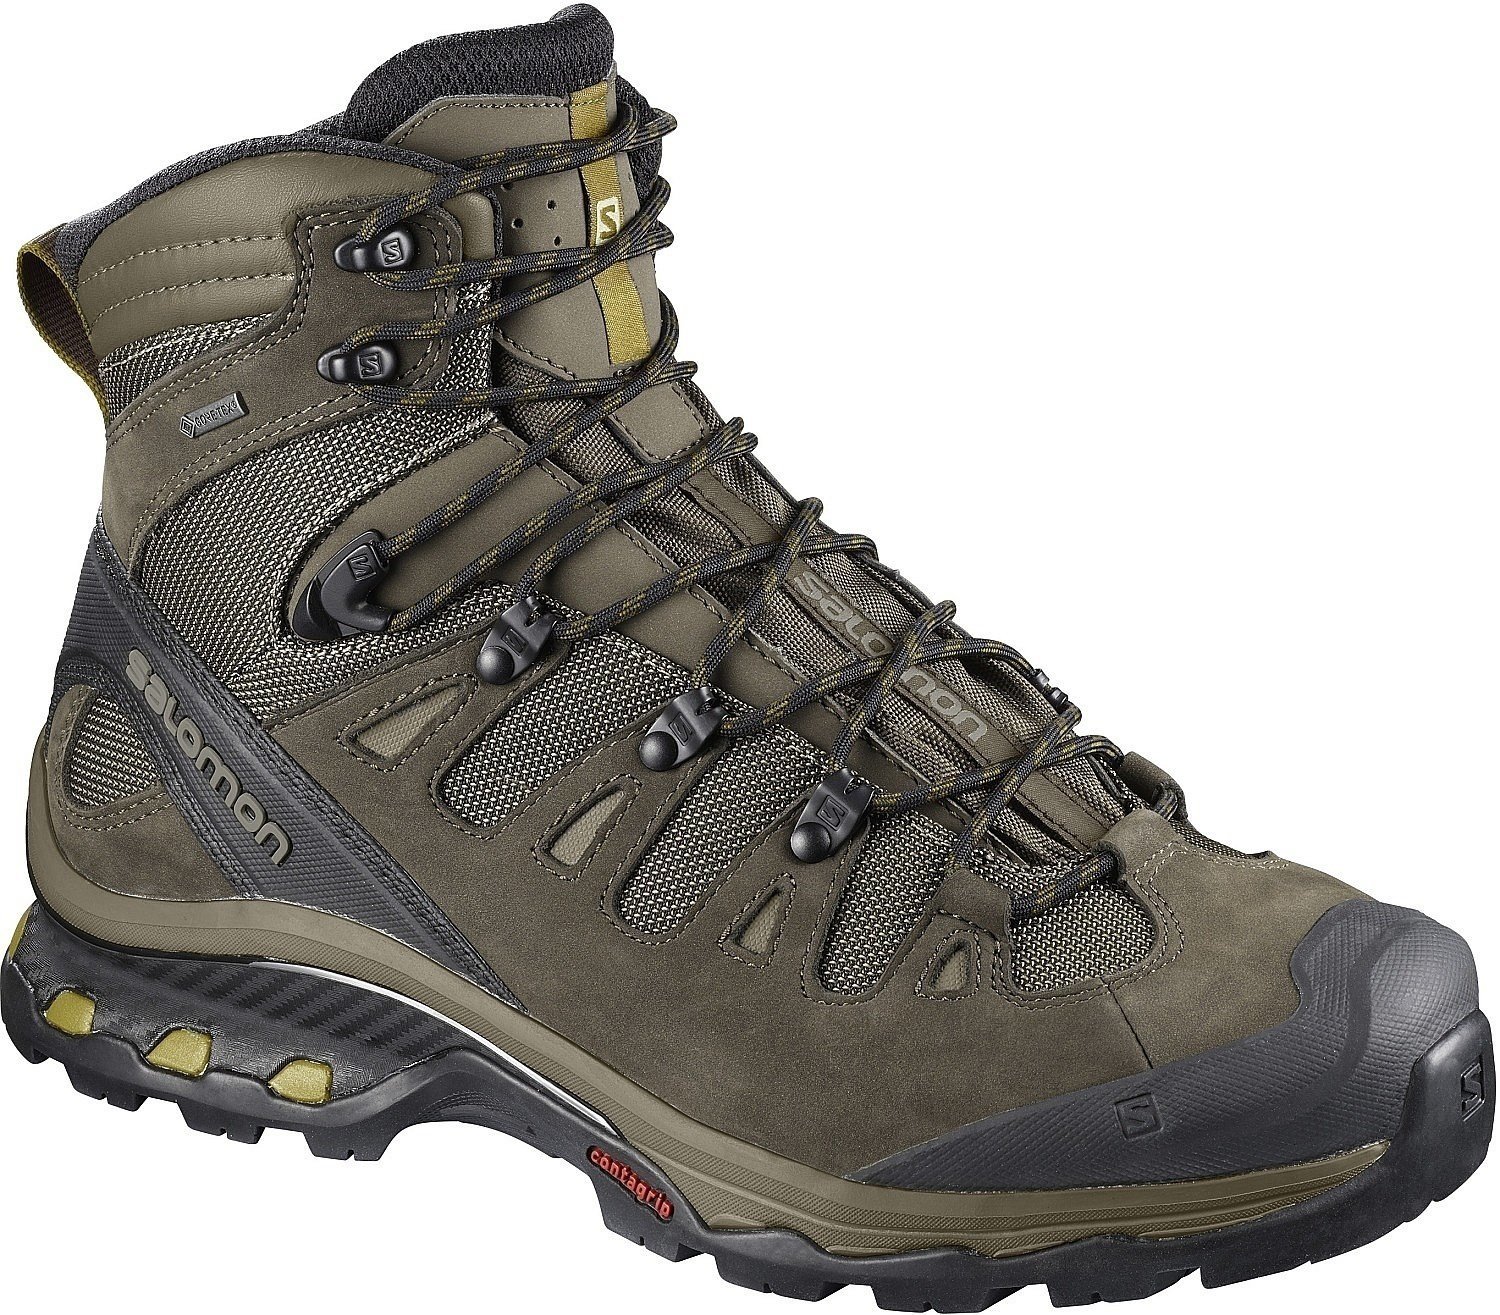 Ανδρικό Παπούτσι Ορειβασίας Salomon Quest 4D 3 GTX Wren/Bungee Cord 44 2/3 Ανδρικό Παπούτσι Ορειβασίας